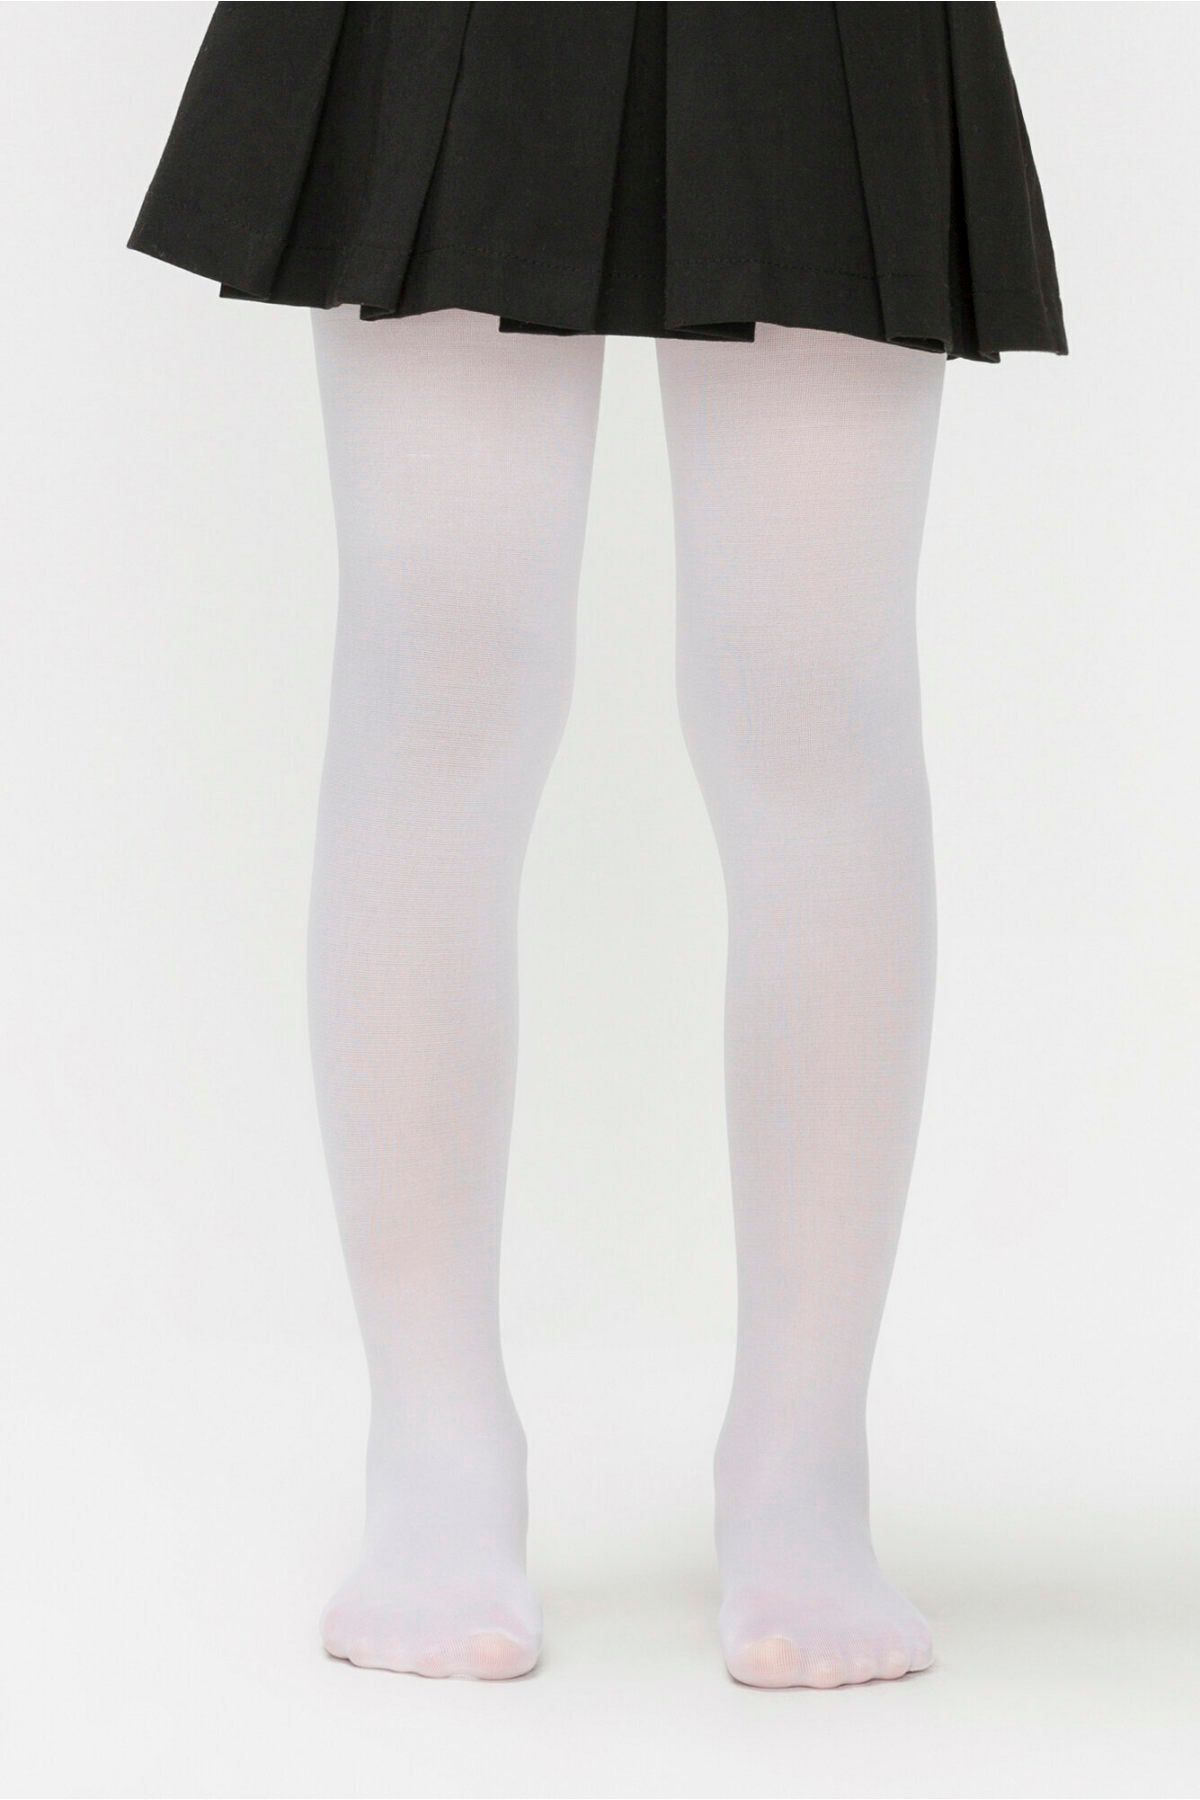 Penti Kız Çocuk Beyaz Mikro 40 Mus Külotlu Çorap